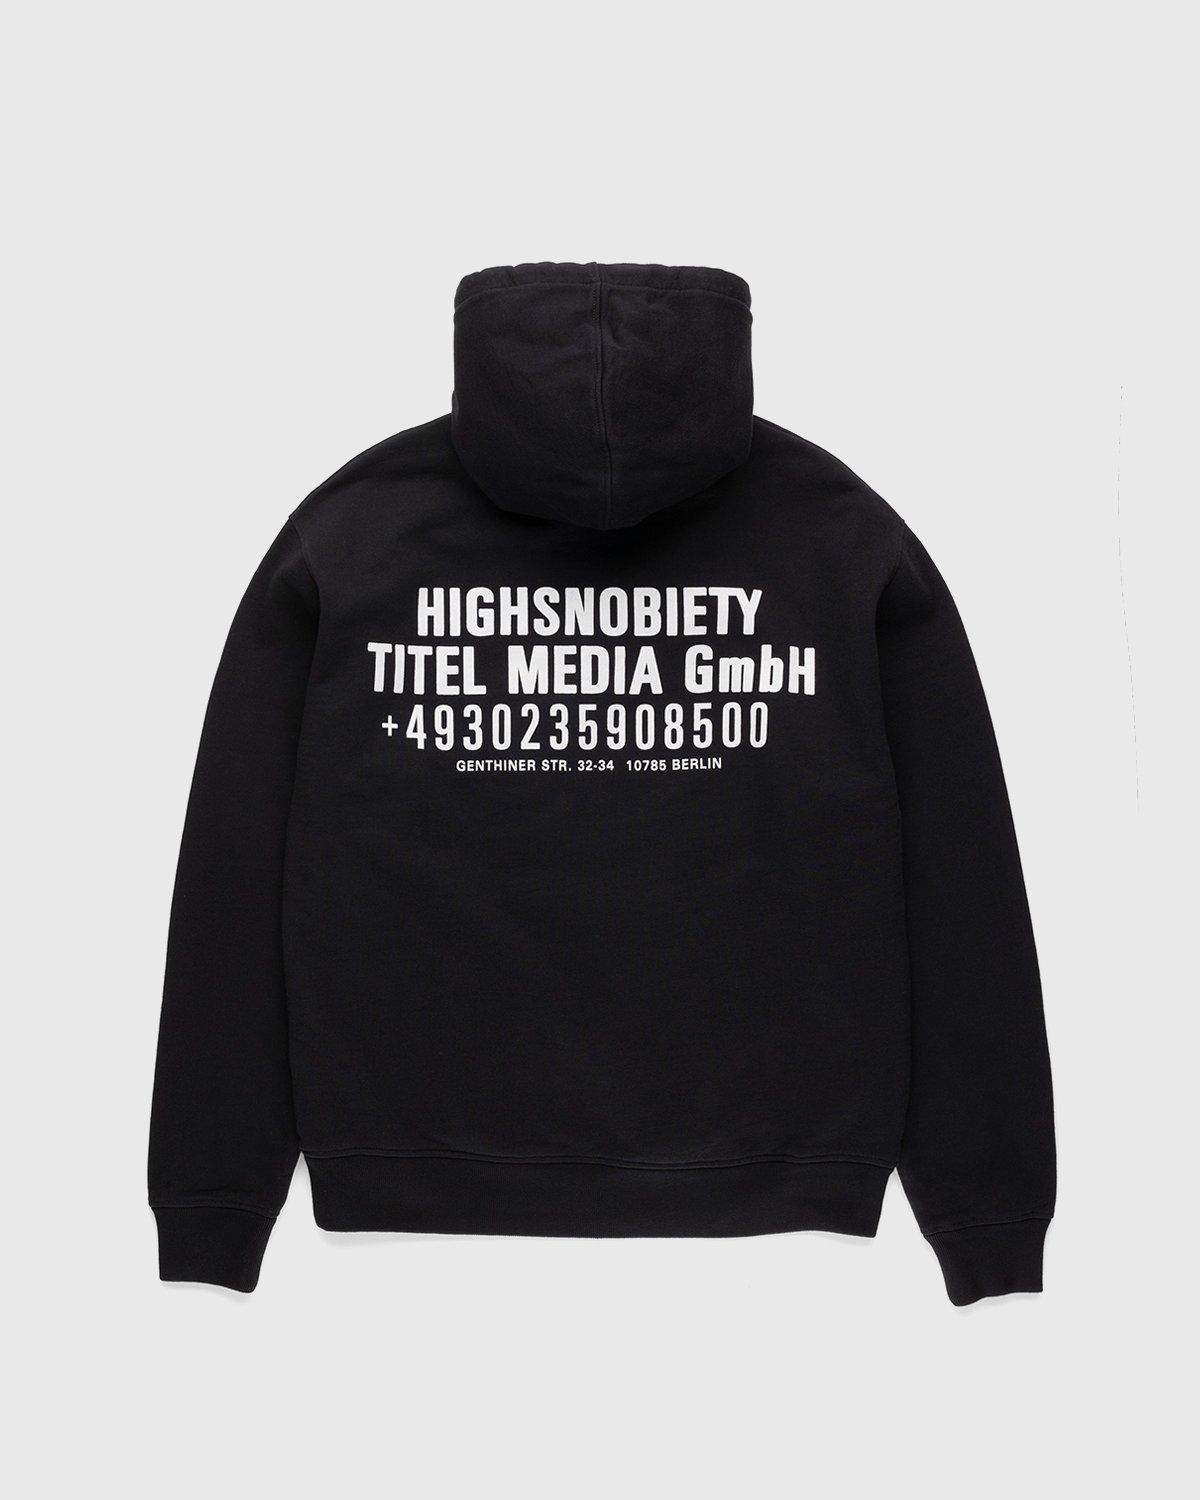 Highsnobiety – Titel Media GmbH Hoodie Black - Image 1